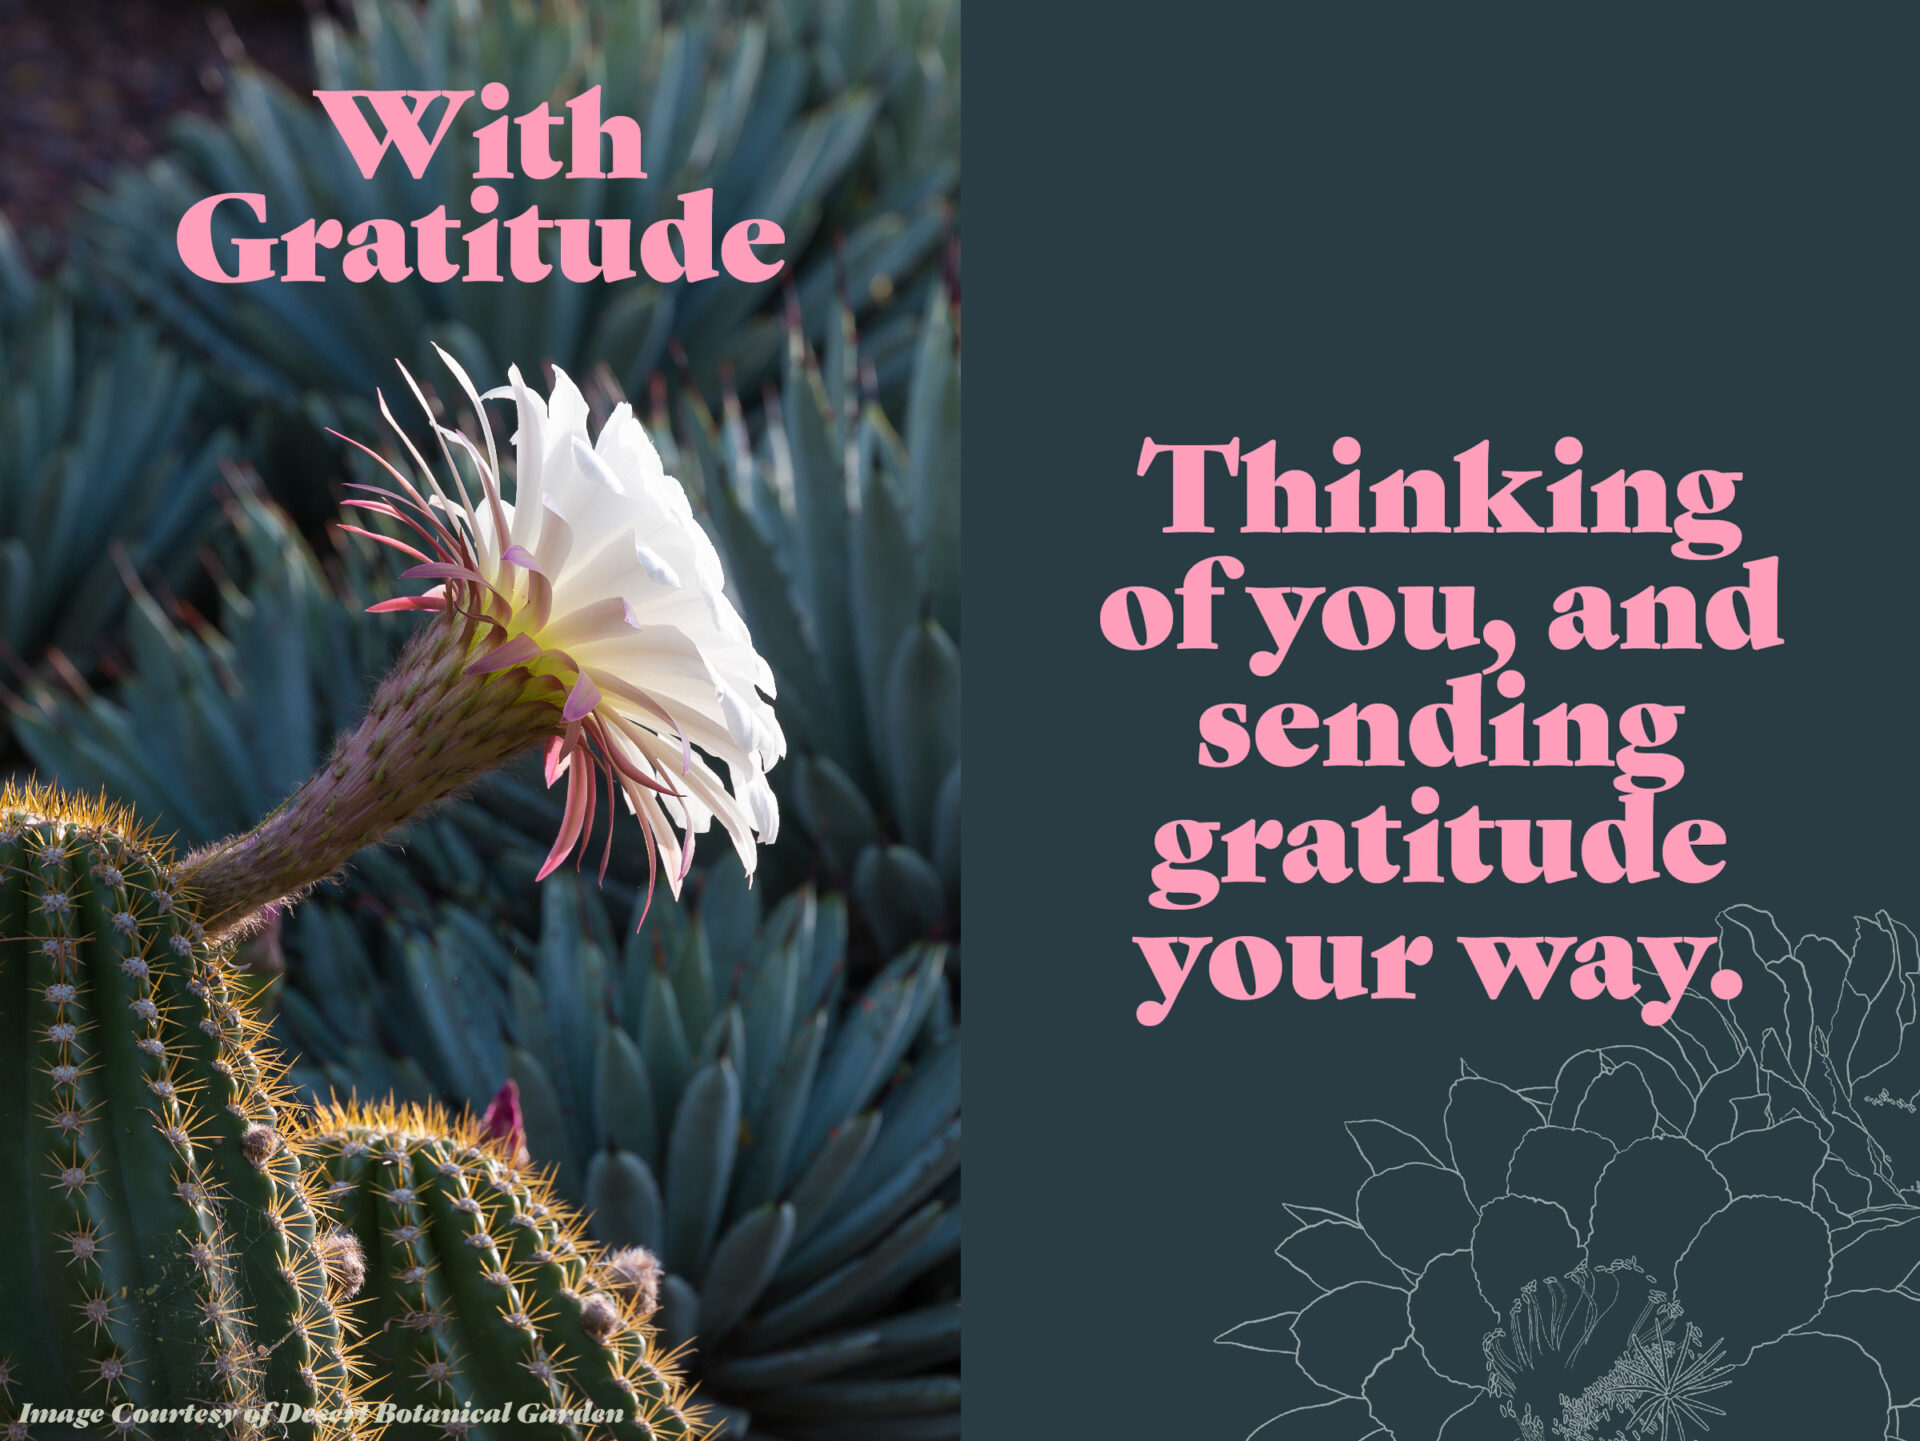 Desert Botanical Garden Sending Gratitude Postcard